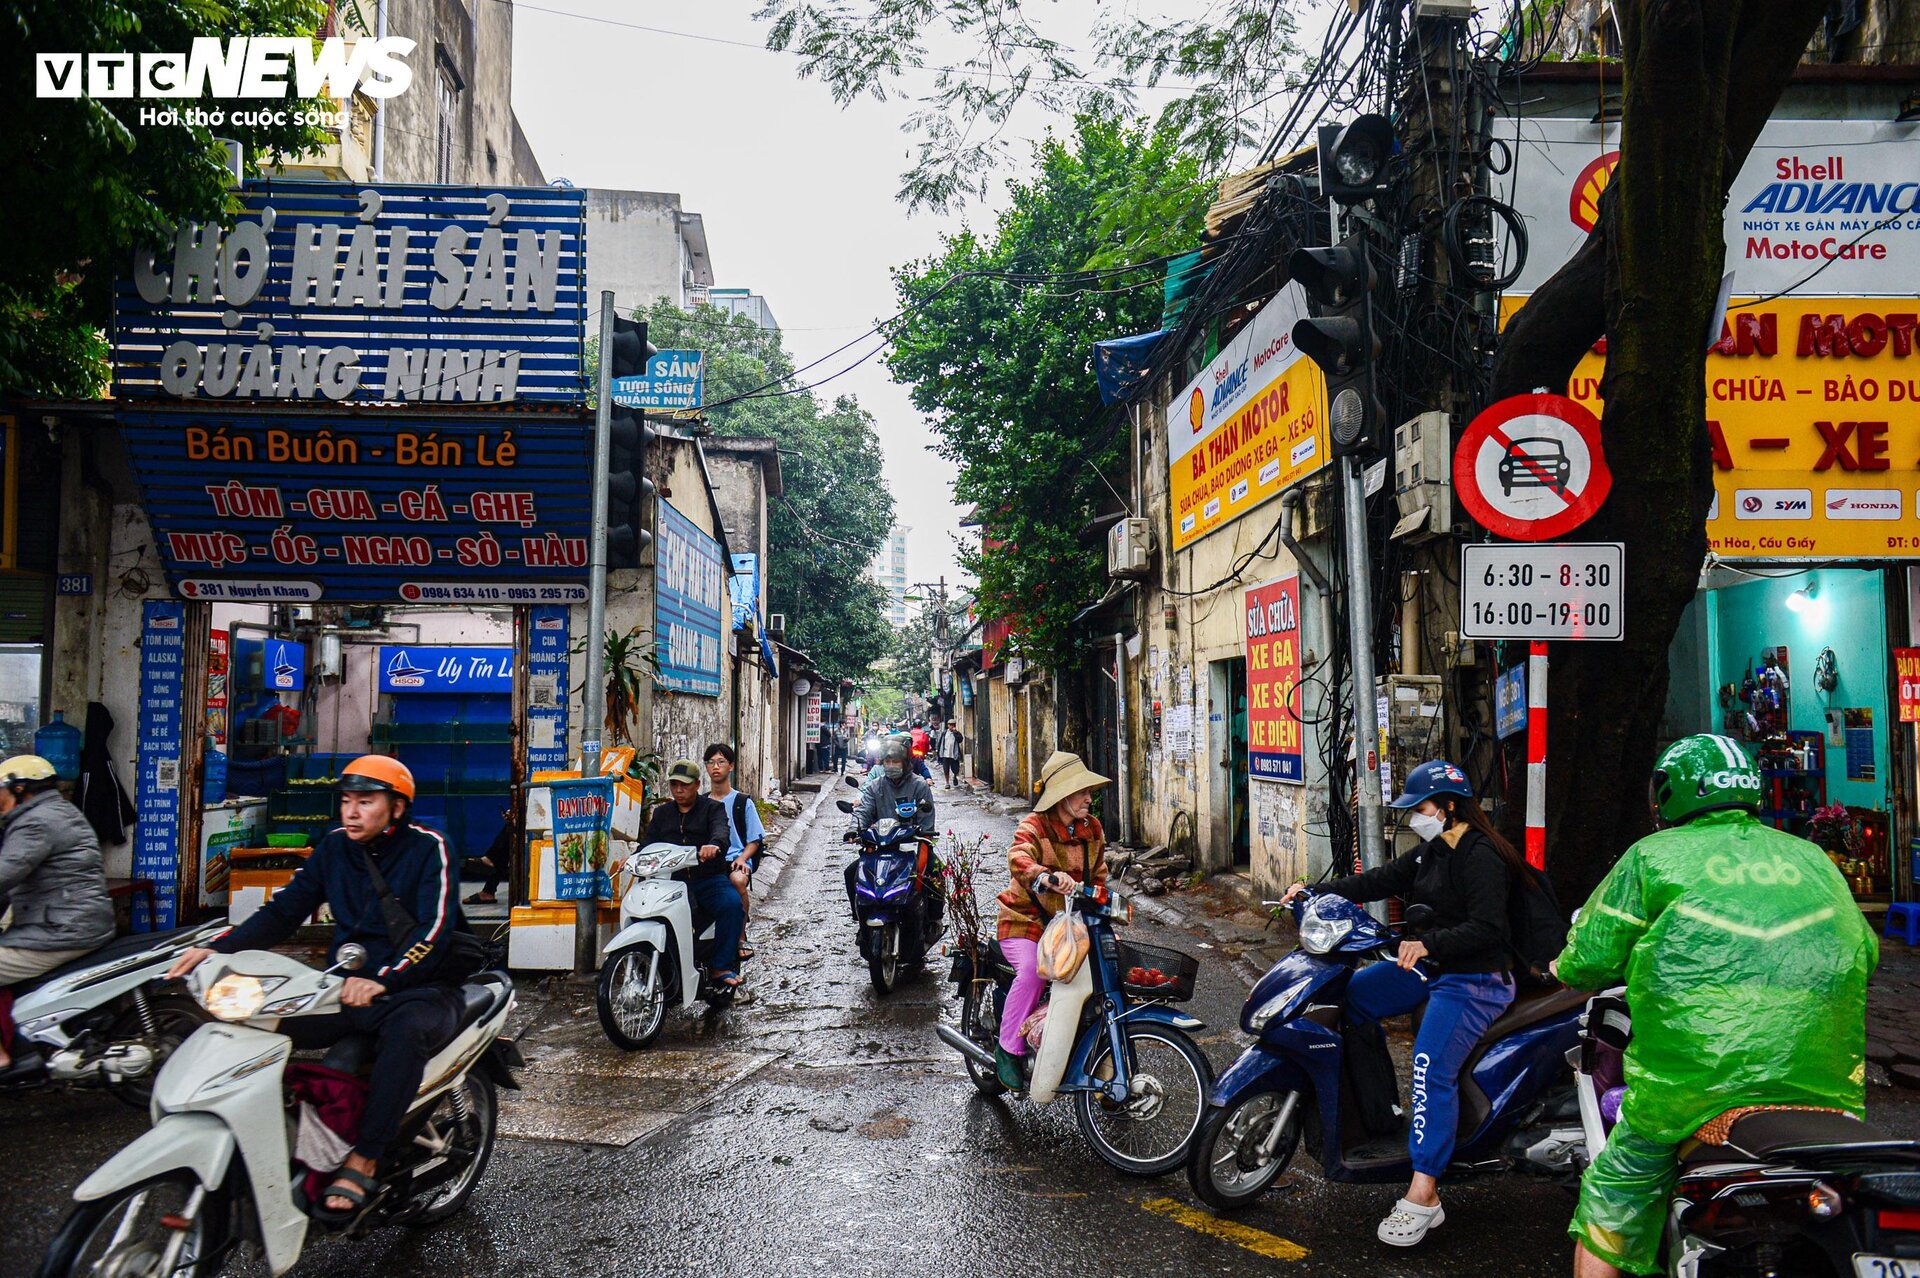 Con ngõ huyết mạch ở Hà Nội mòn mỏi chờ mở rộng, dân vấp ổ gà ngã xe như cơm bữa - Ảnh 3.